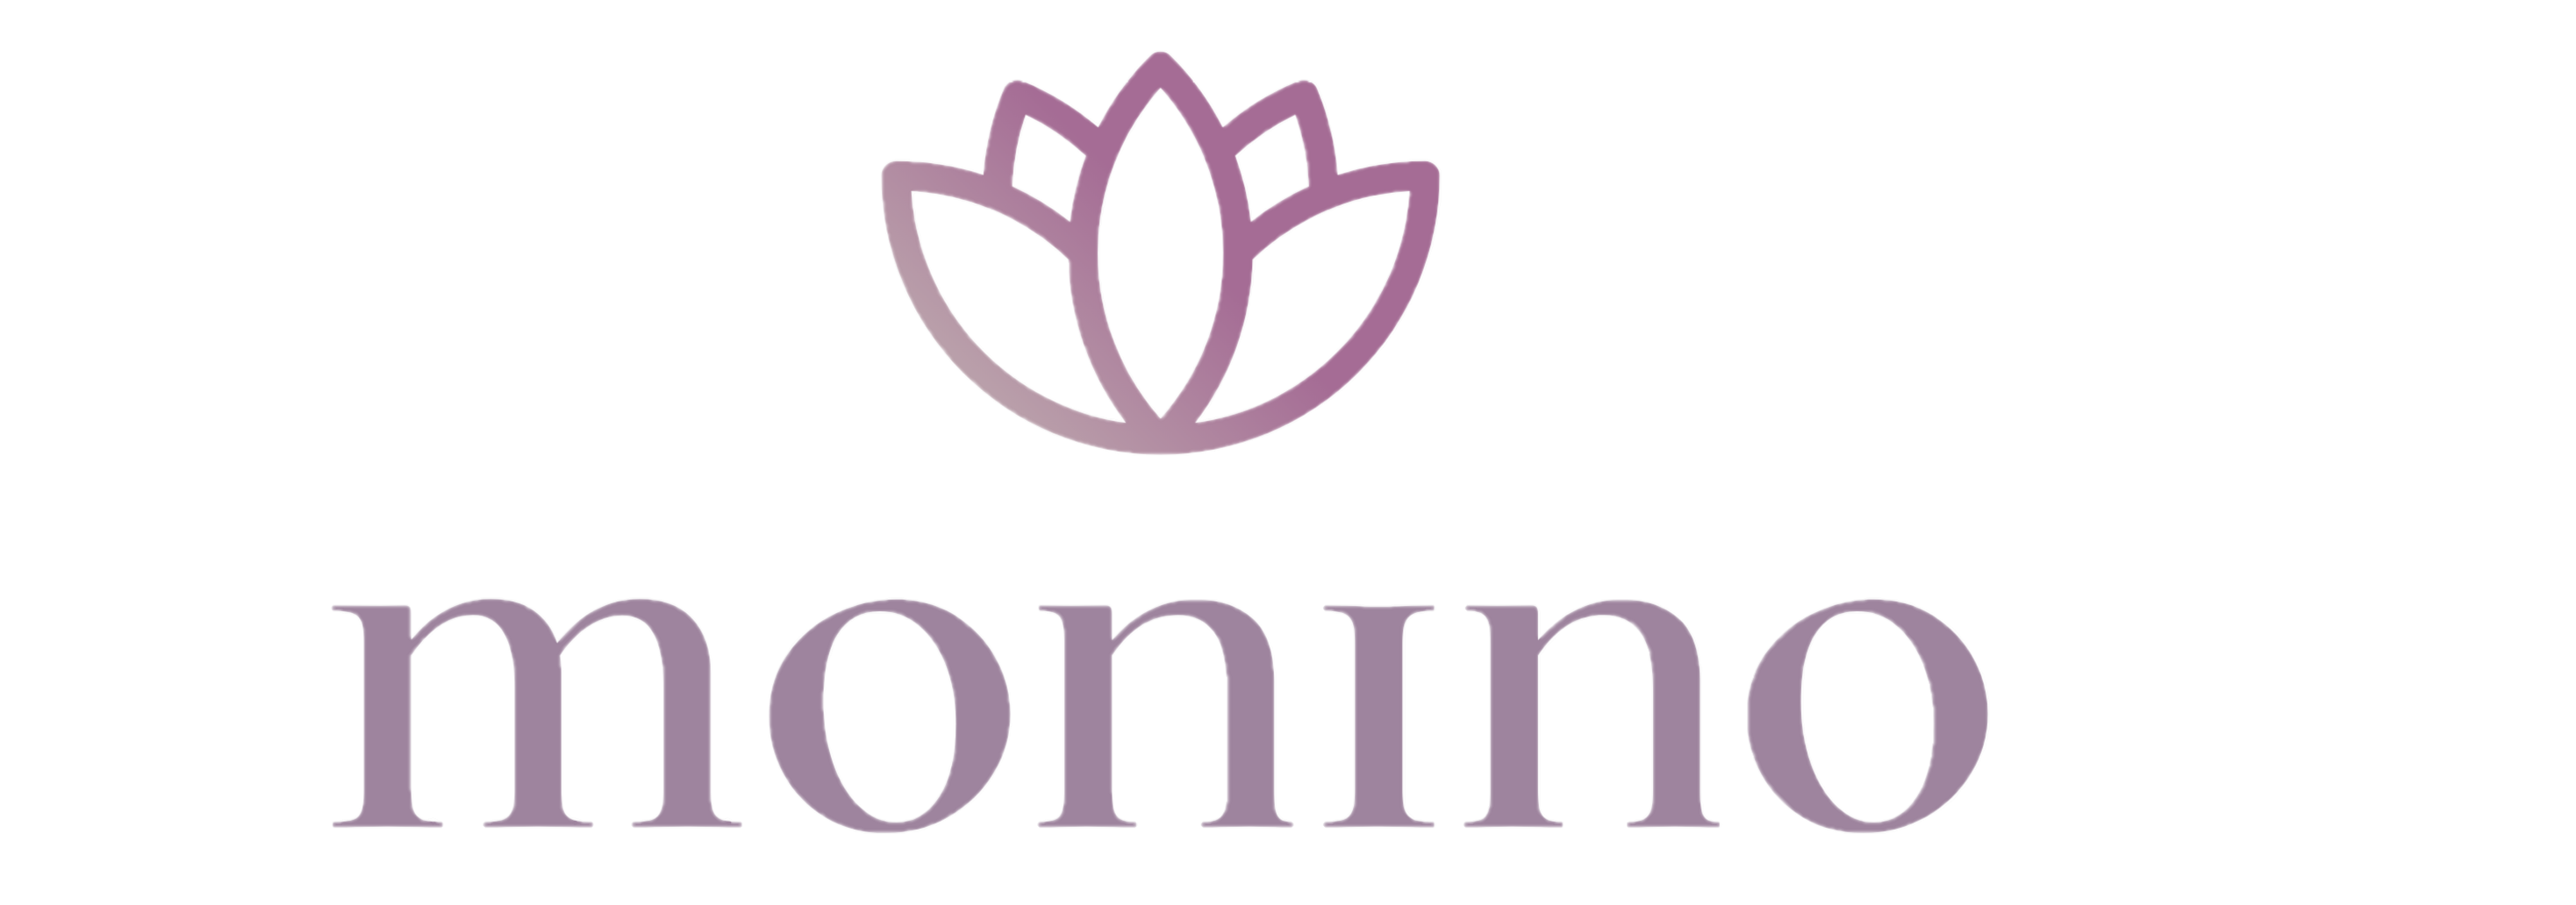 Monino Nails -Logo